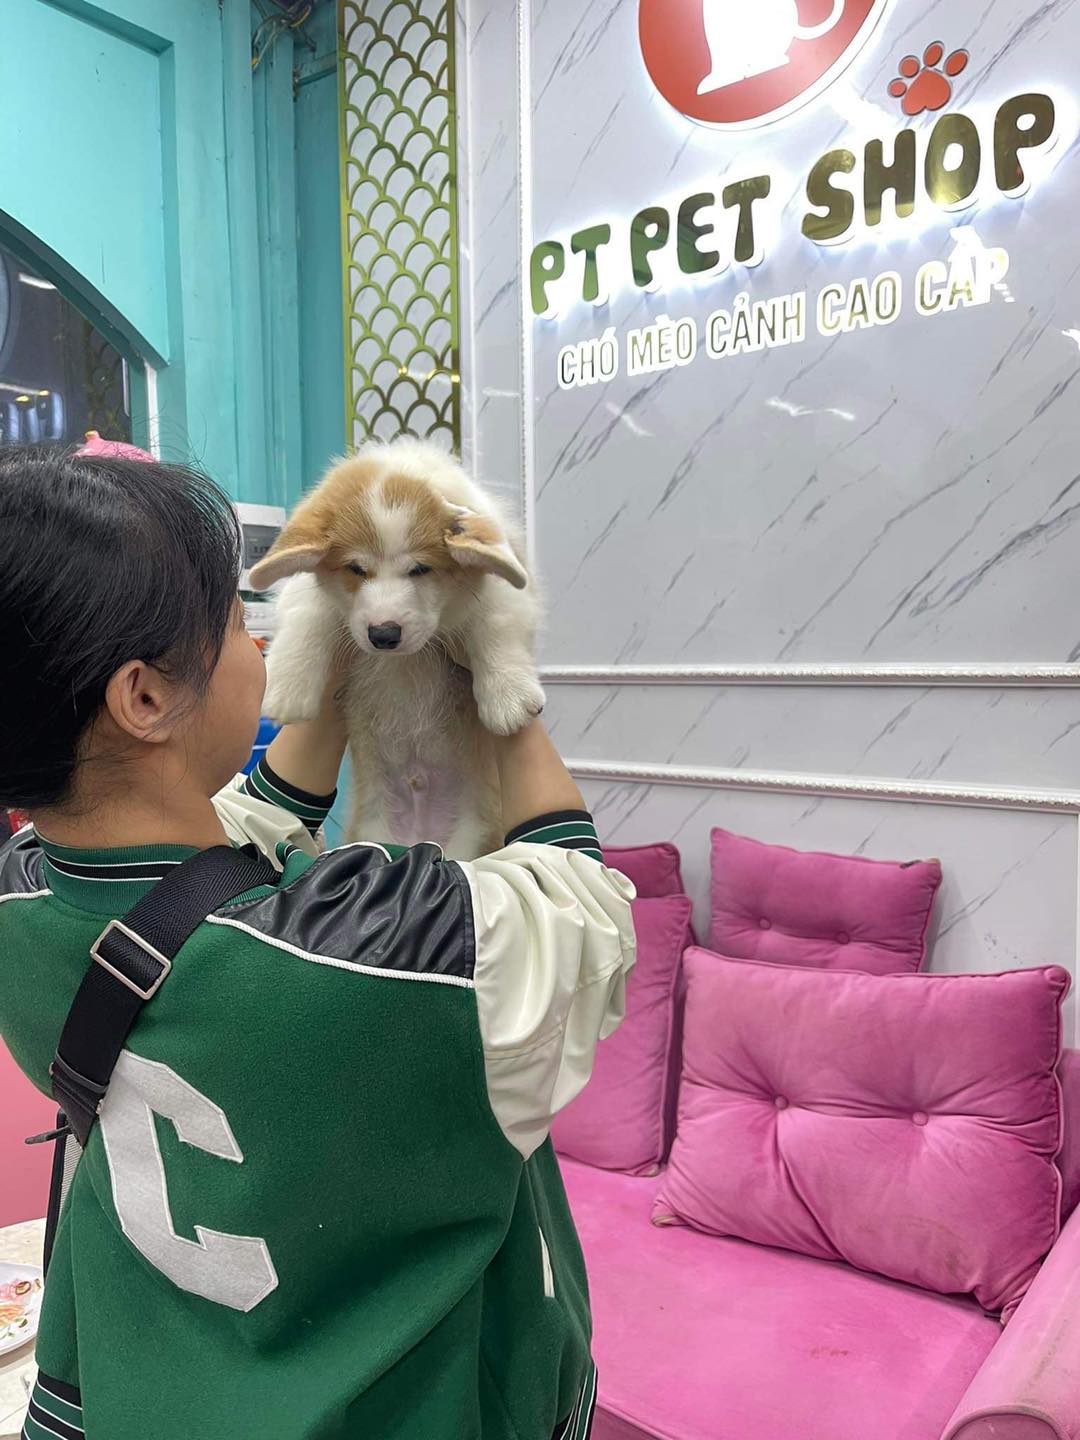 PT Pet Shop ảnh 1